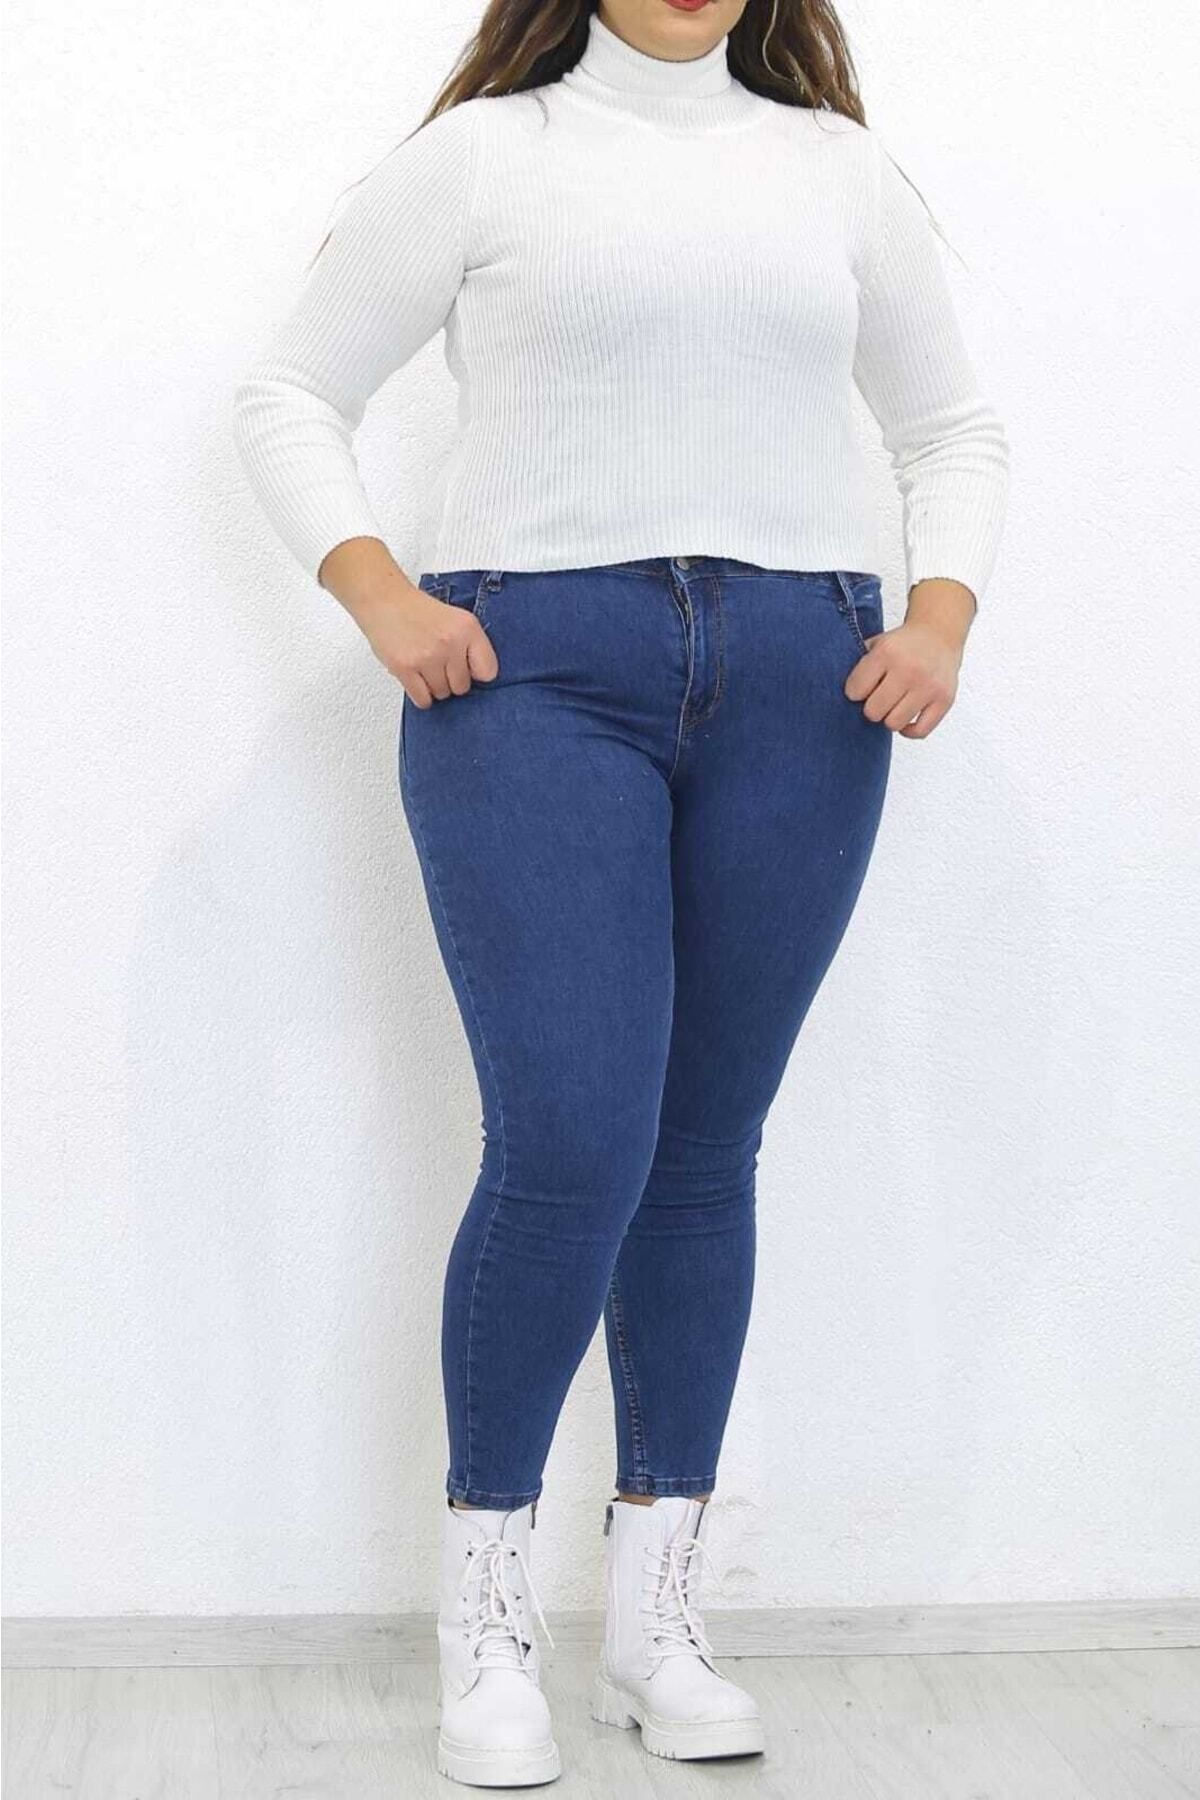 Lixera Büyük Beden Battal Koyu Mavi Yüksek Bel Likralı Jeans Pantolon (TOPARLAYICI)